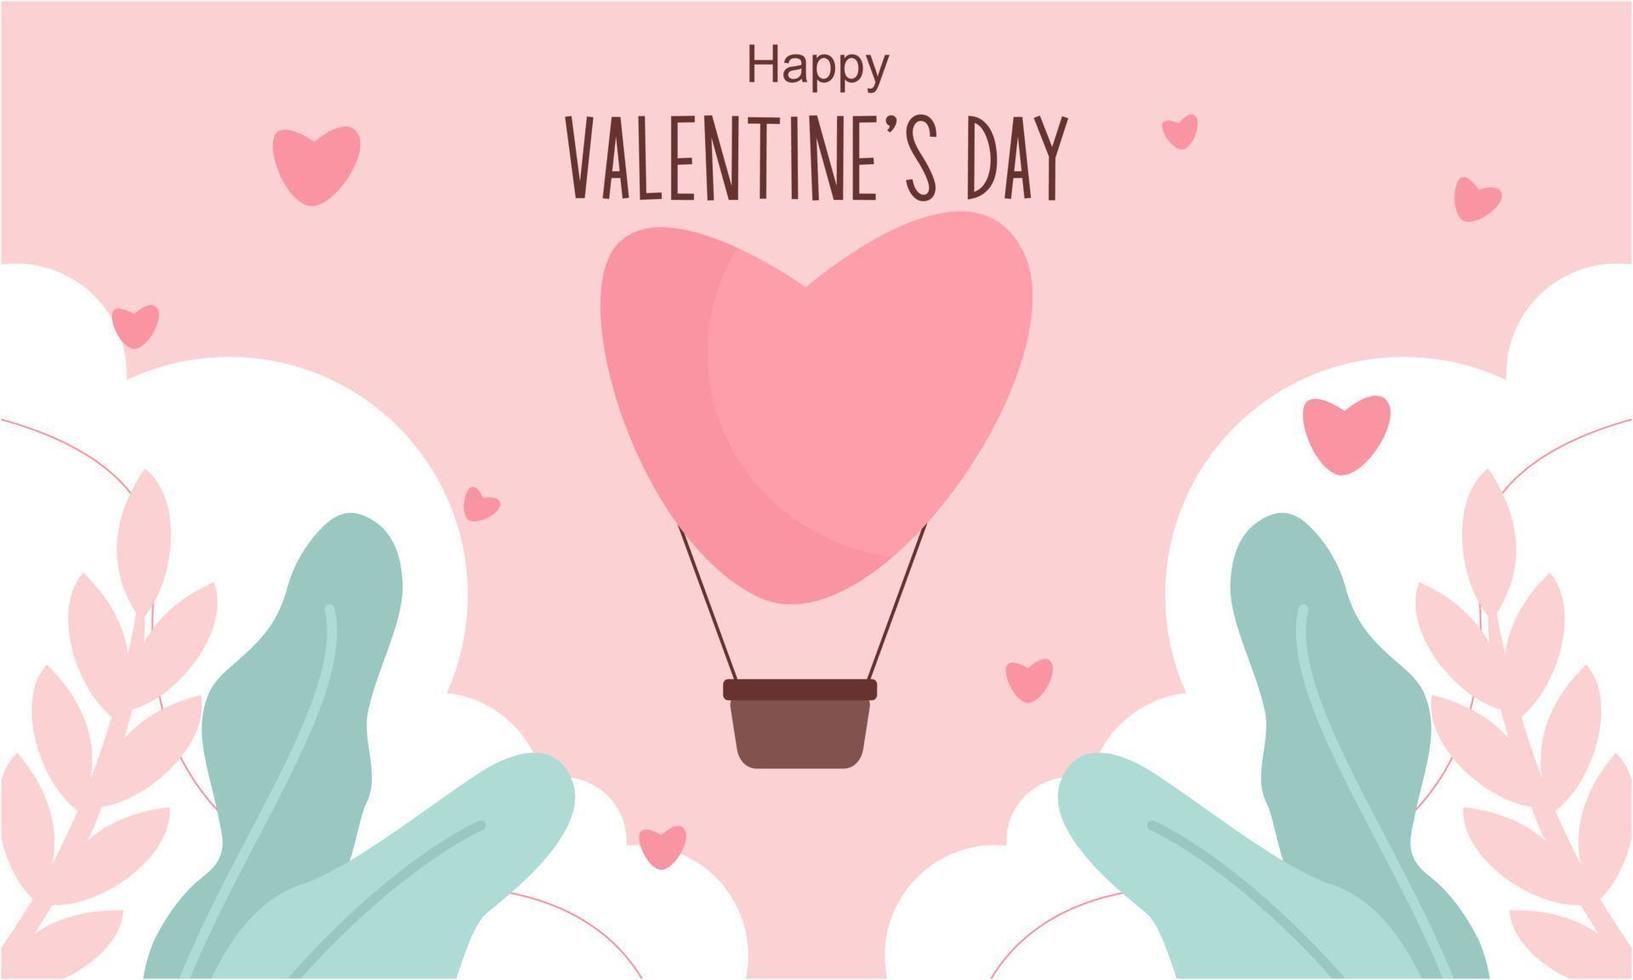 valentijnsdag dag achtergrond met hart vormig ballonnen illustratie vector